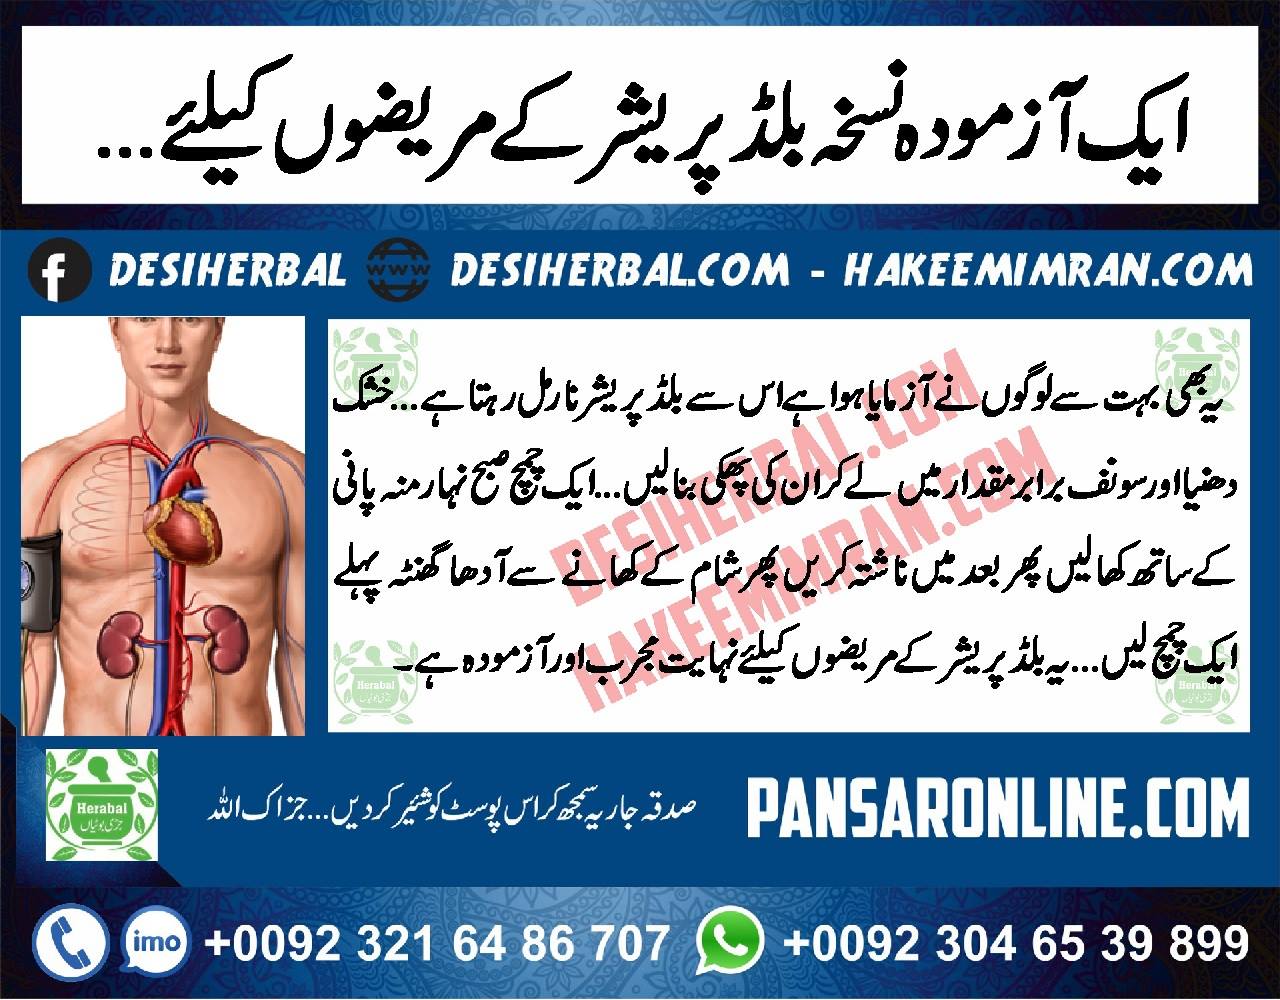 High Blood Pressure Ka Treatment in Urdu